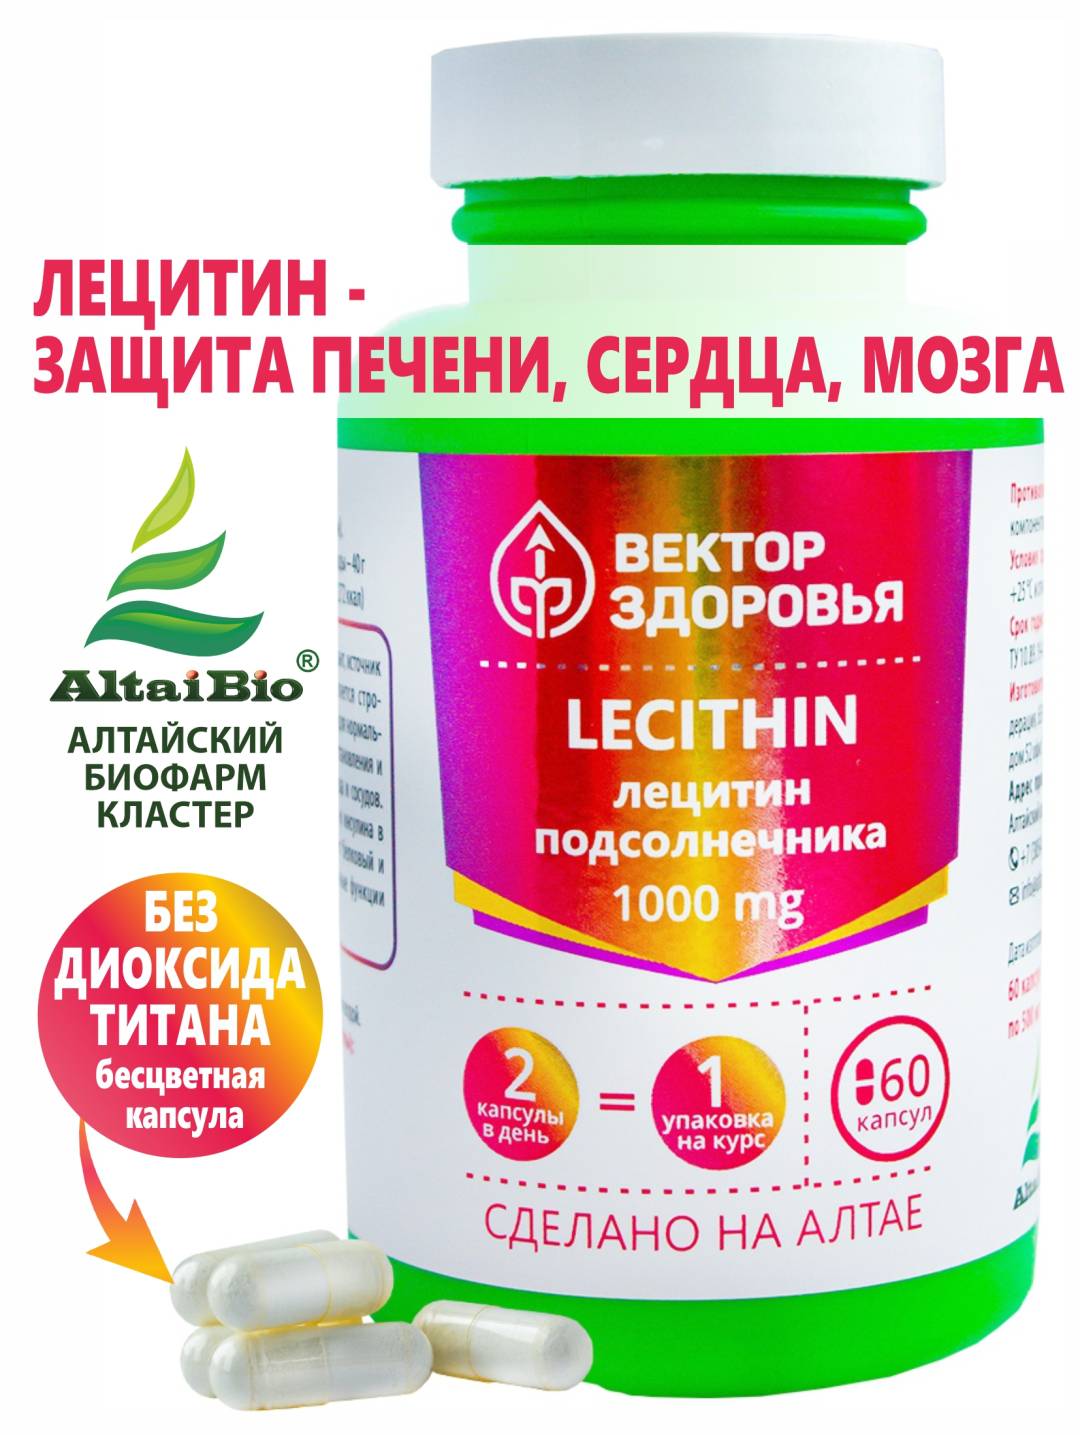 Купить онлайн Комплекс LECITHIN - лецитин подсолнечника, 60 капсул в интернет-магазине Беришка с доставкой по Хабаровску и по России недорого.